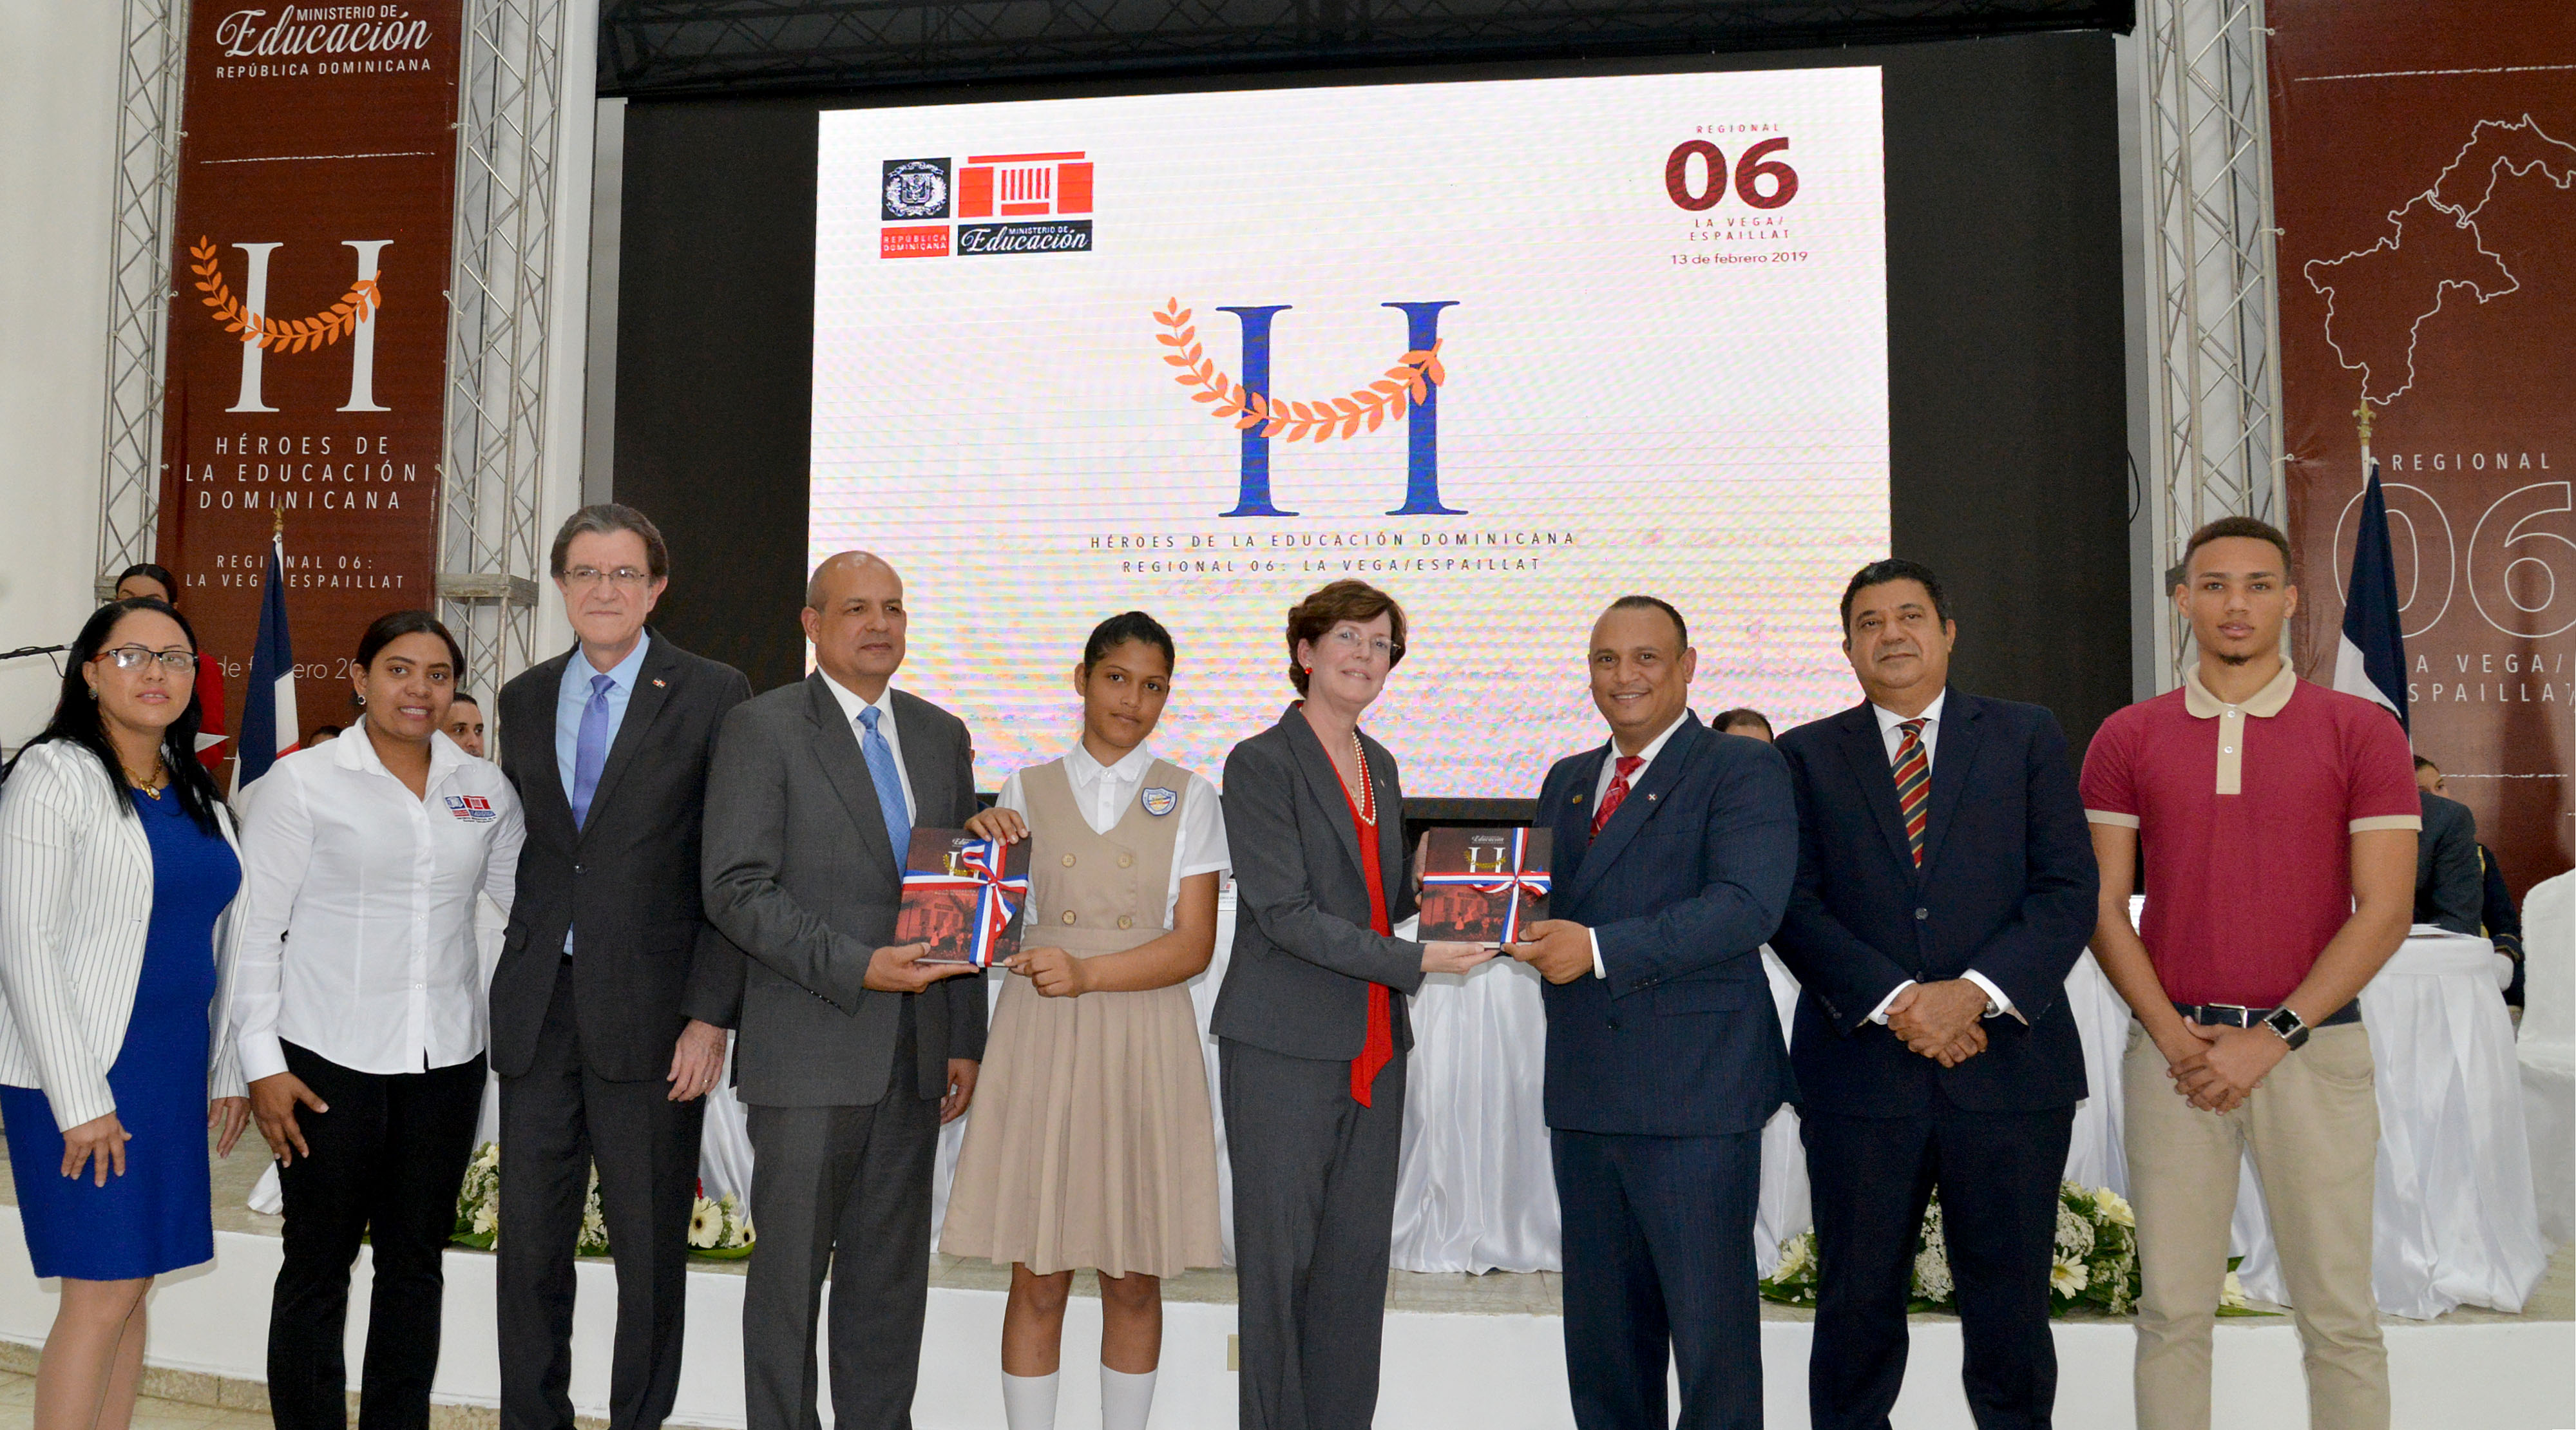  imagen Autoridades del Ministerio de Educación de pie entregando libros Héroes de la Educación Dominicana 